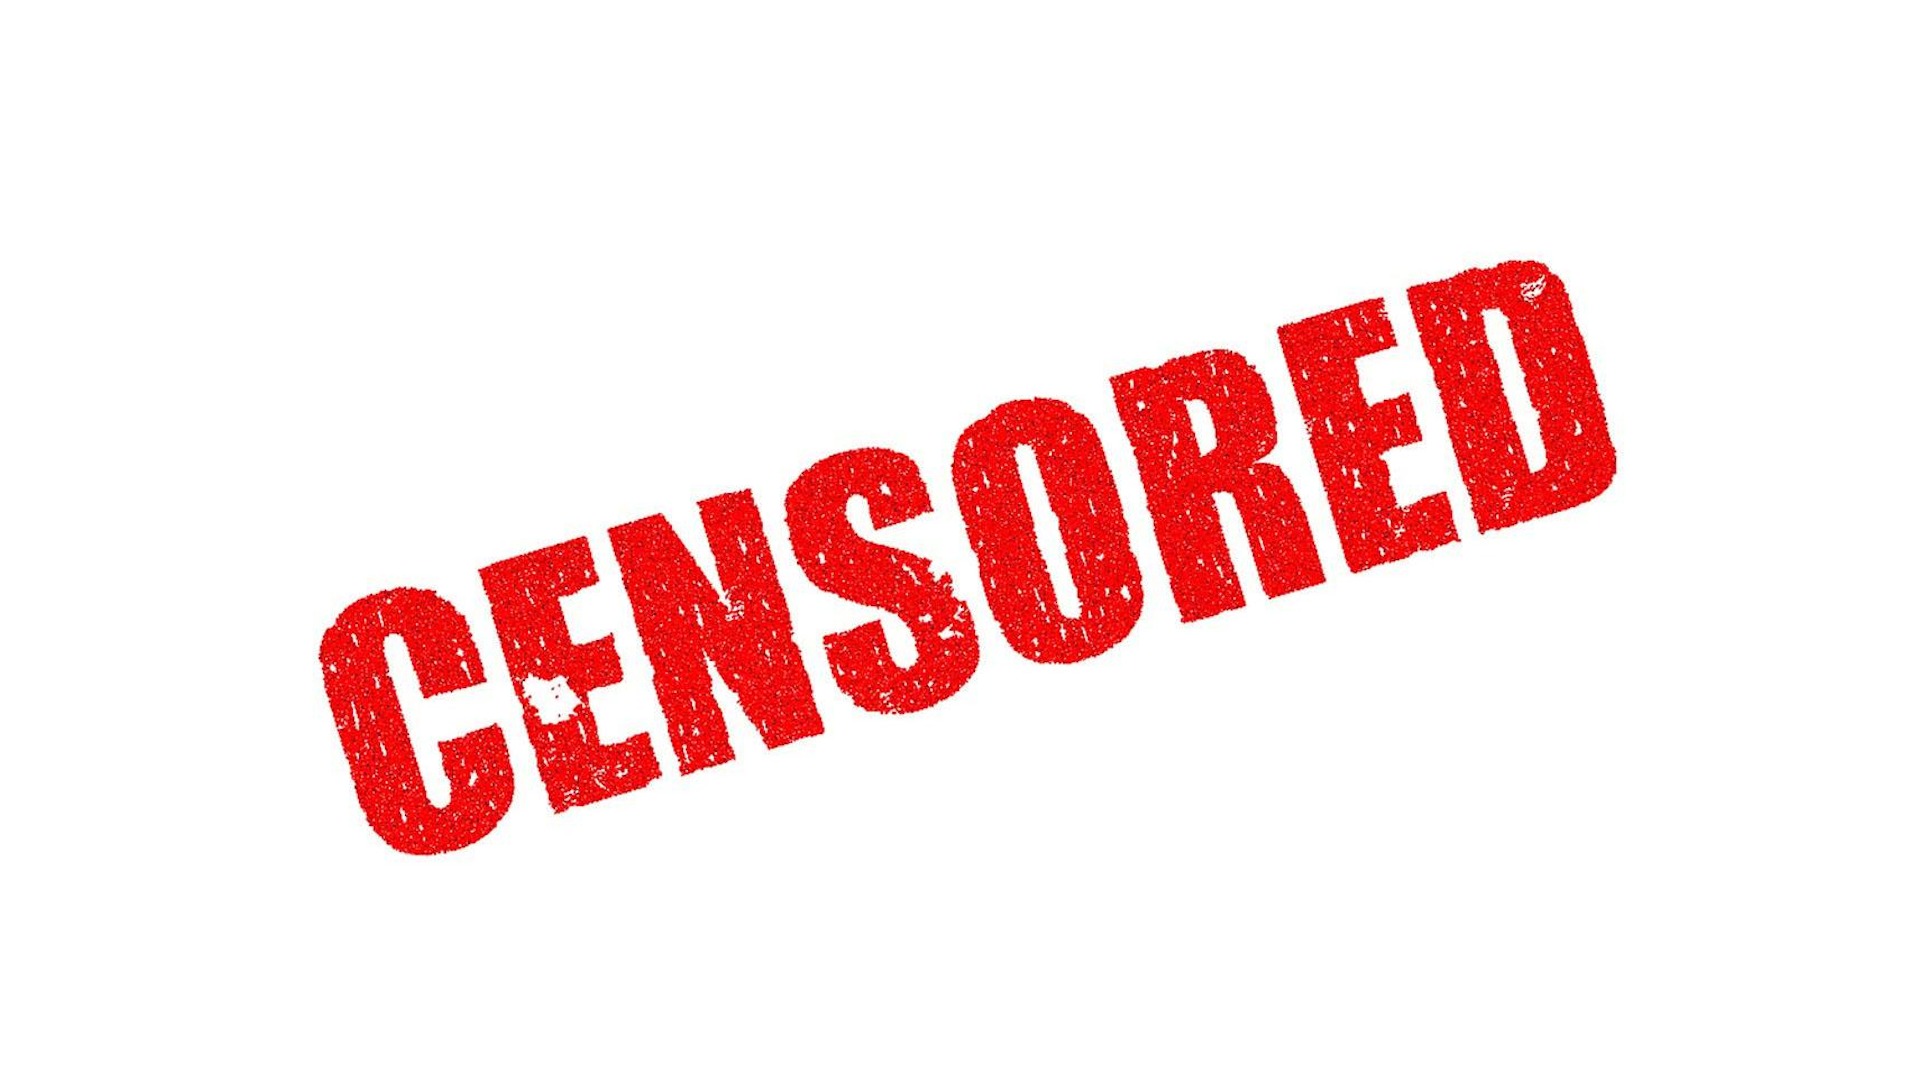 La Maison Blanche a ordonné la censure d’infos véridiques sur le Covid